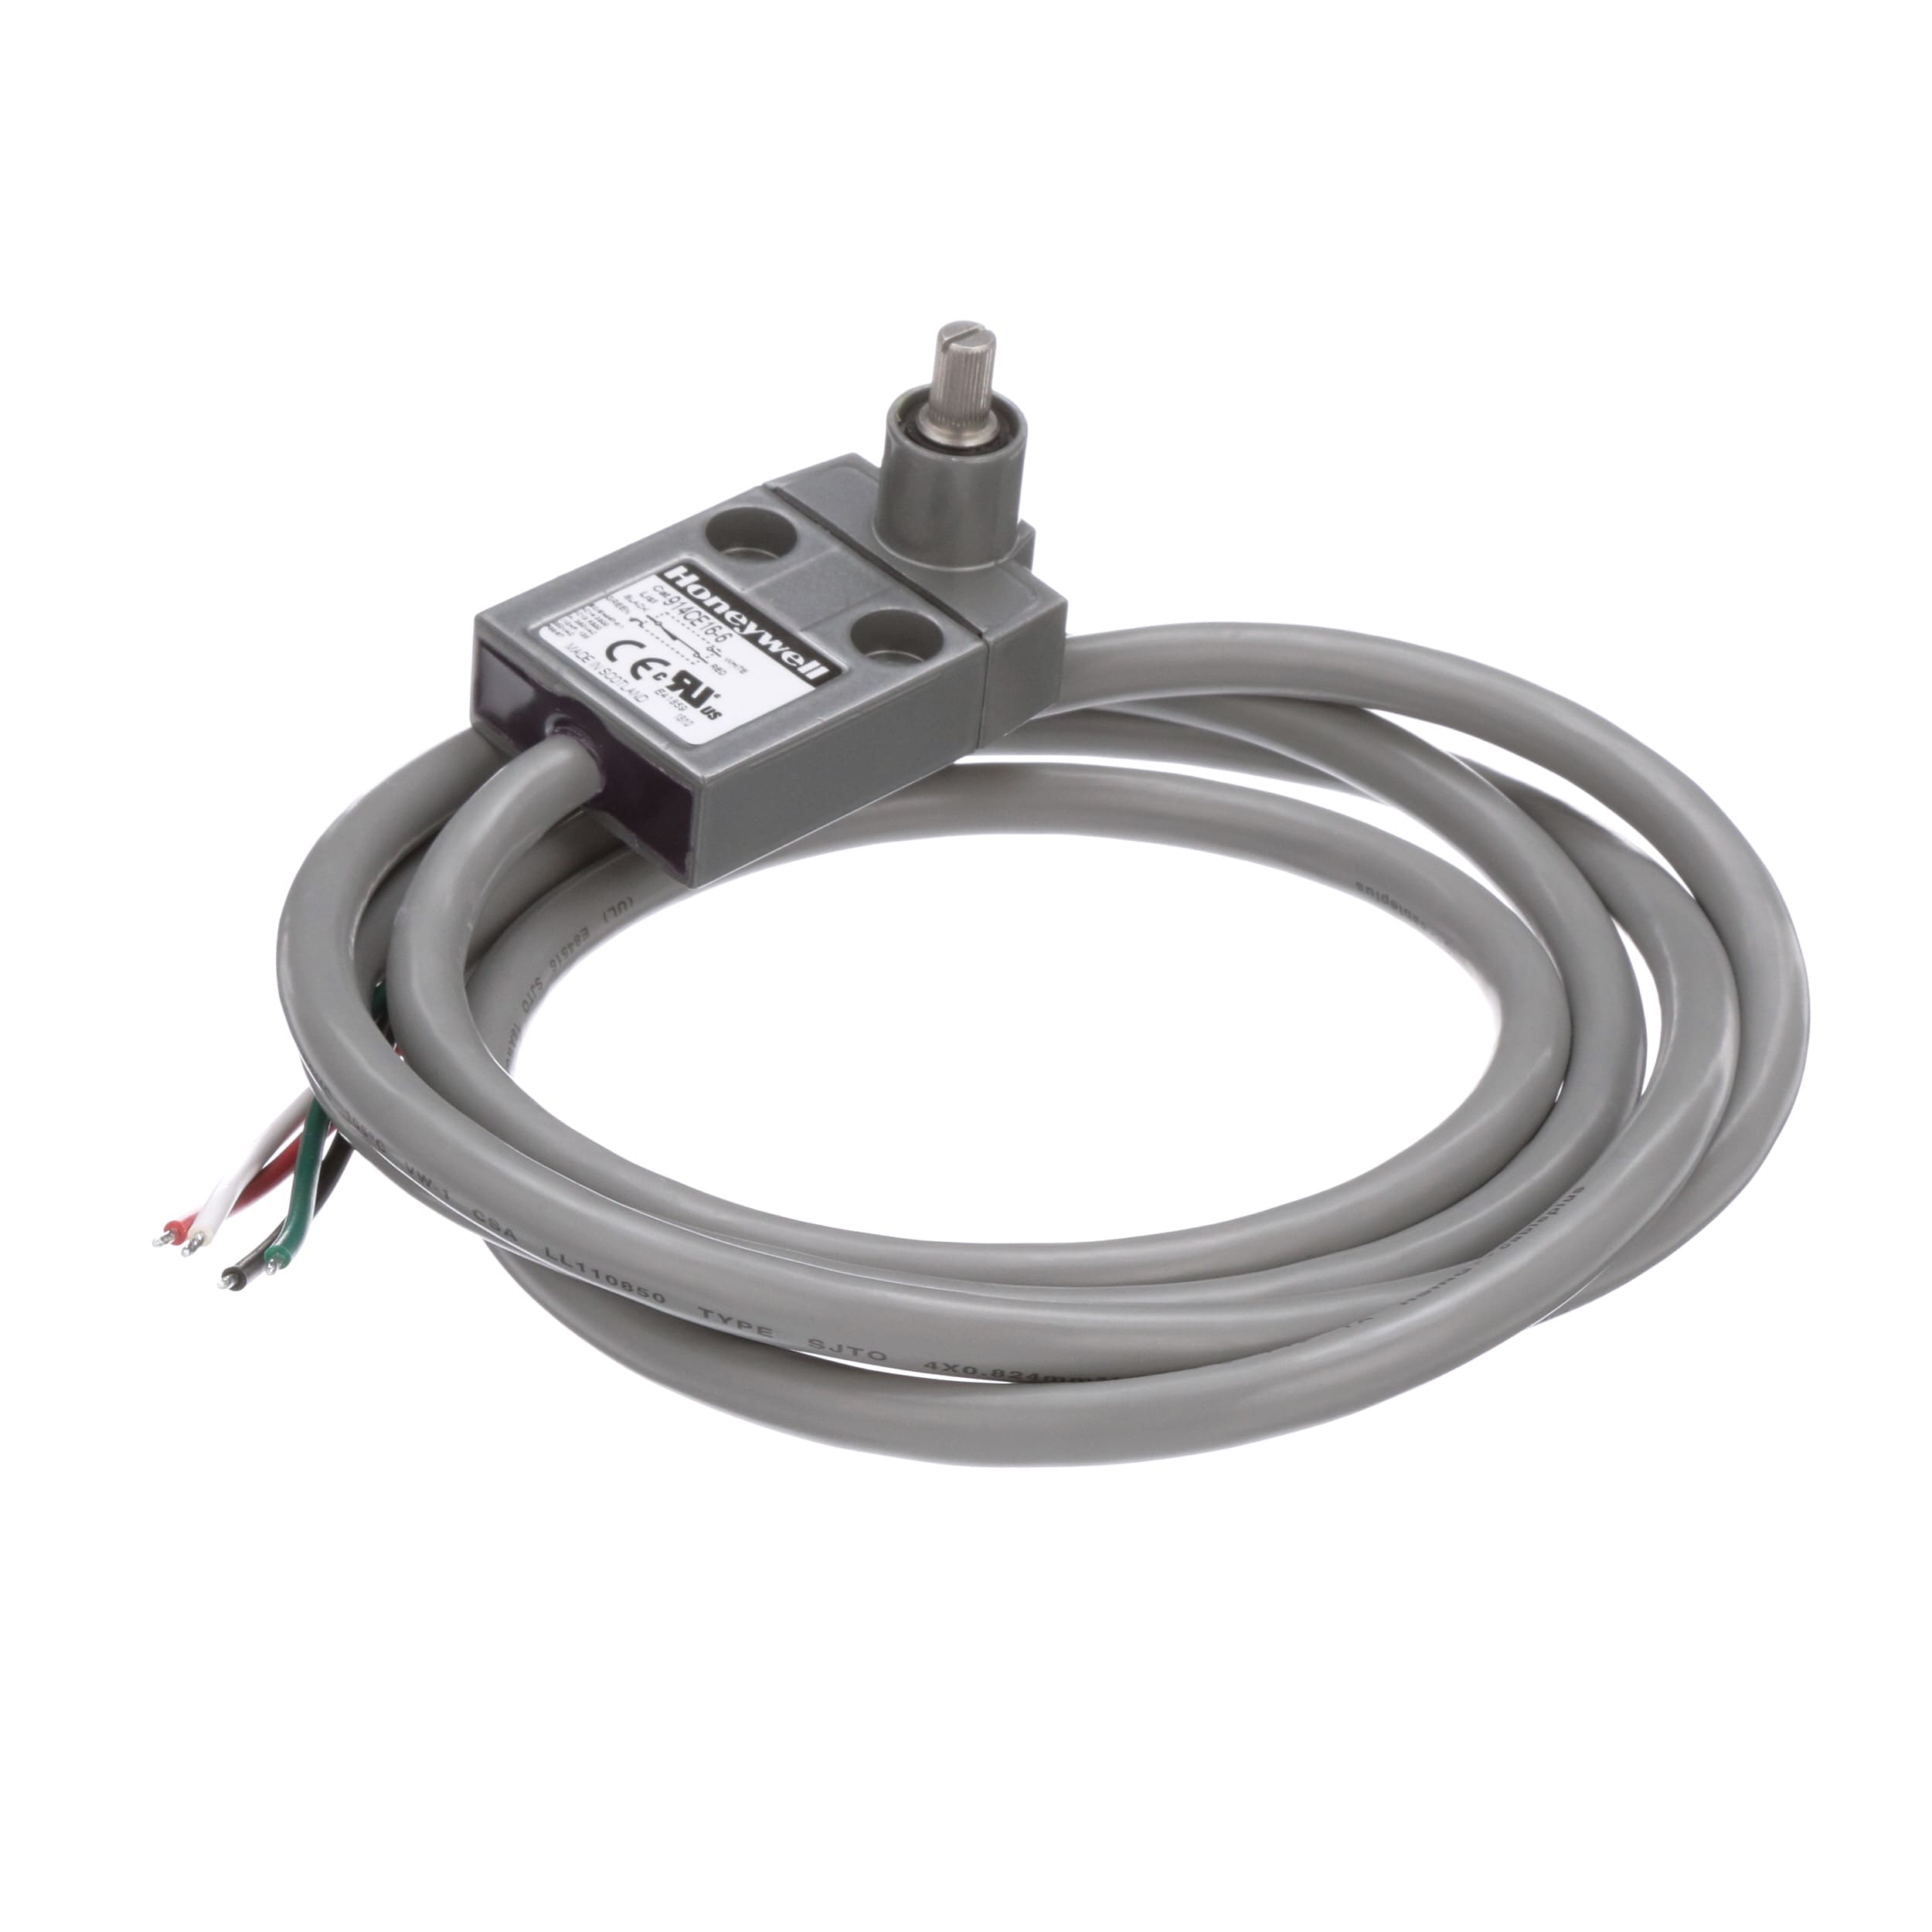 PM-910 Pelacables profesional para electricista 1000V - IEC 609000